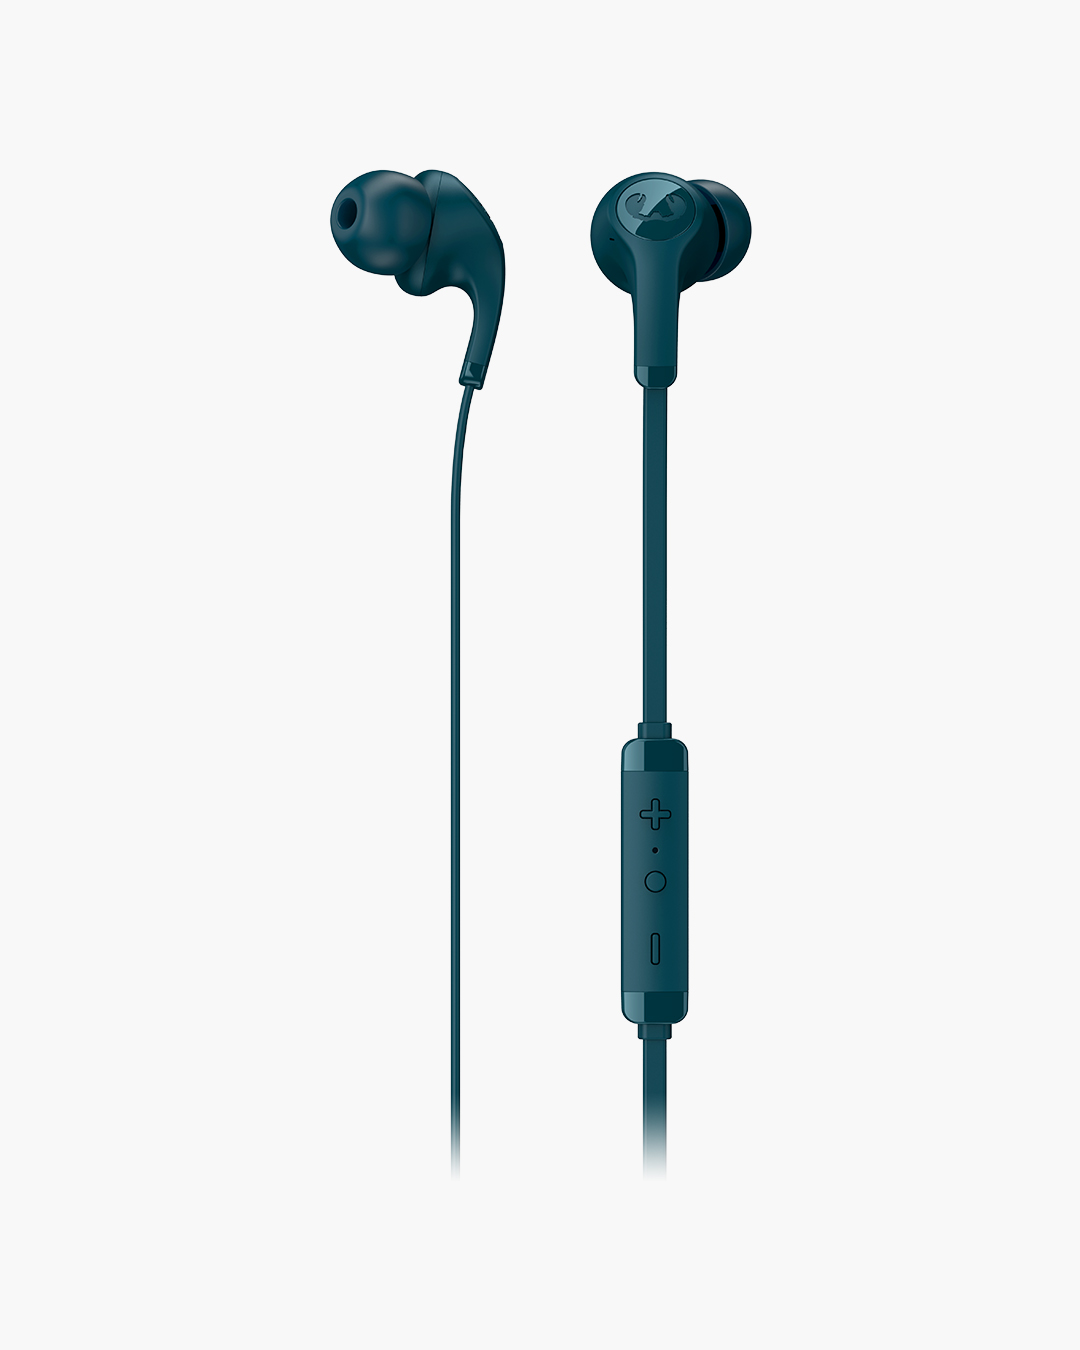 Fresh 'n Rebel - Flow - In-ear headphones with ear tip - Petrol Blue